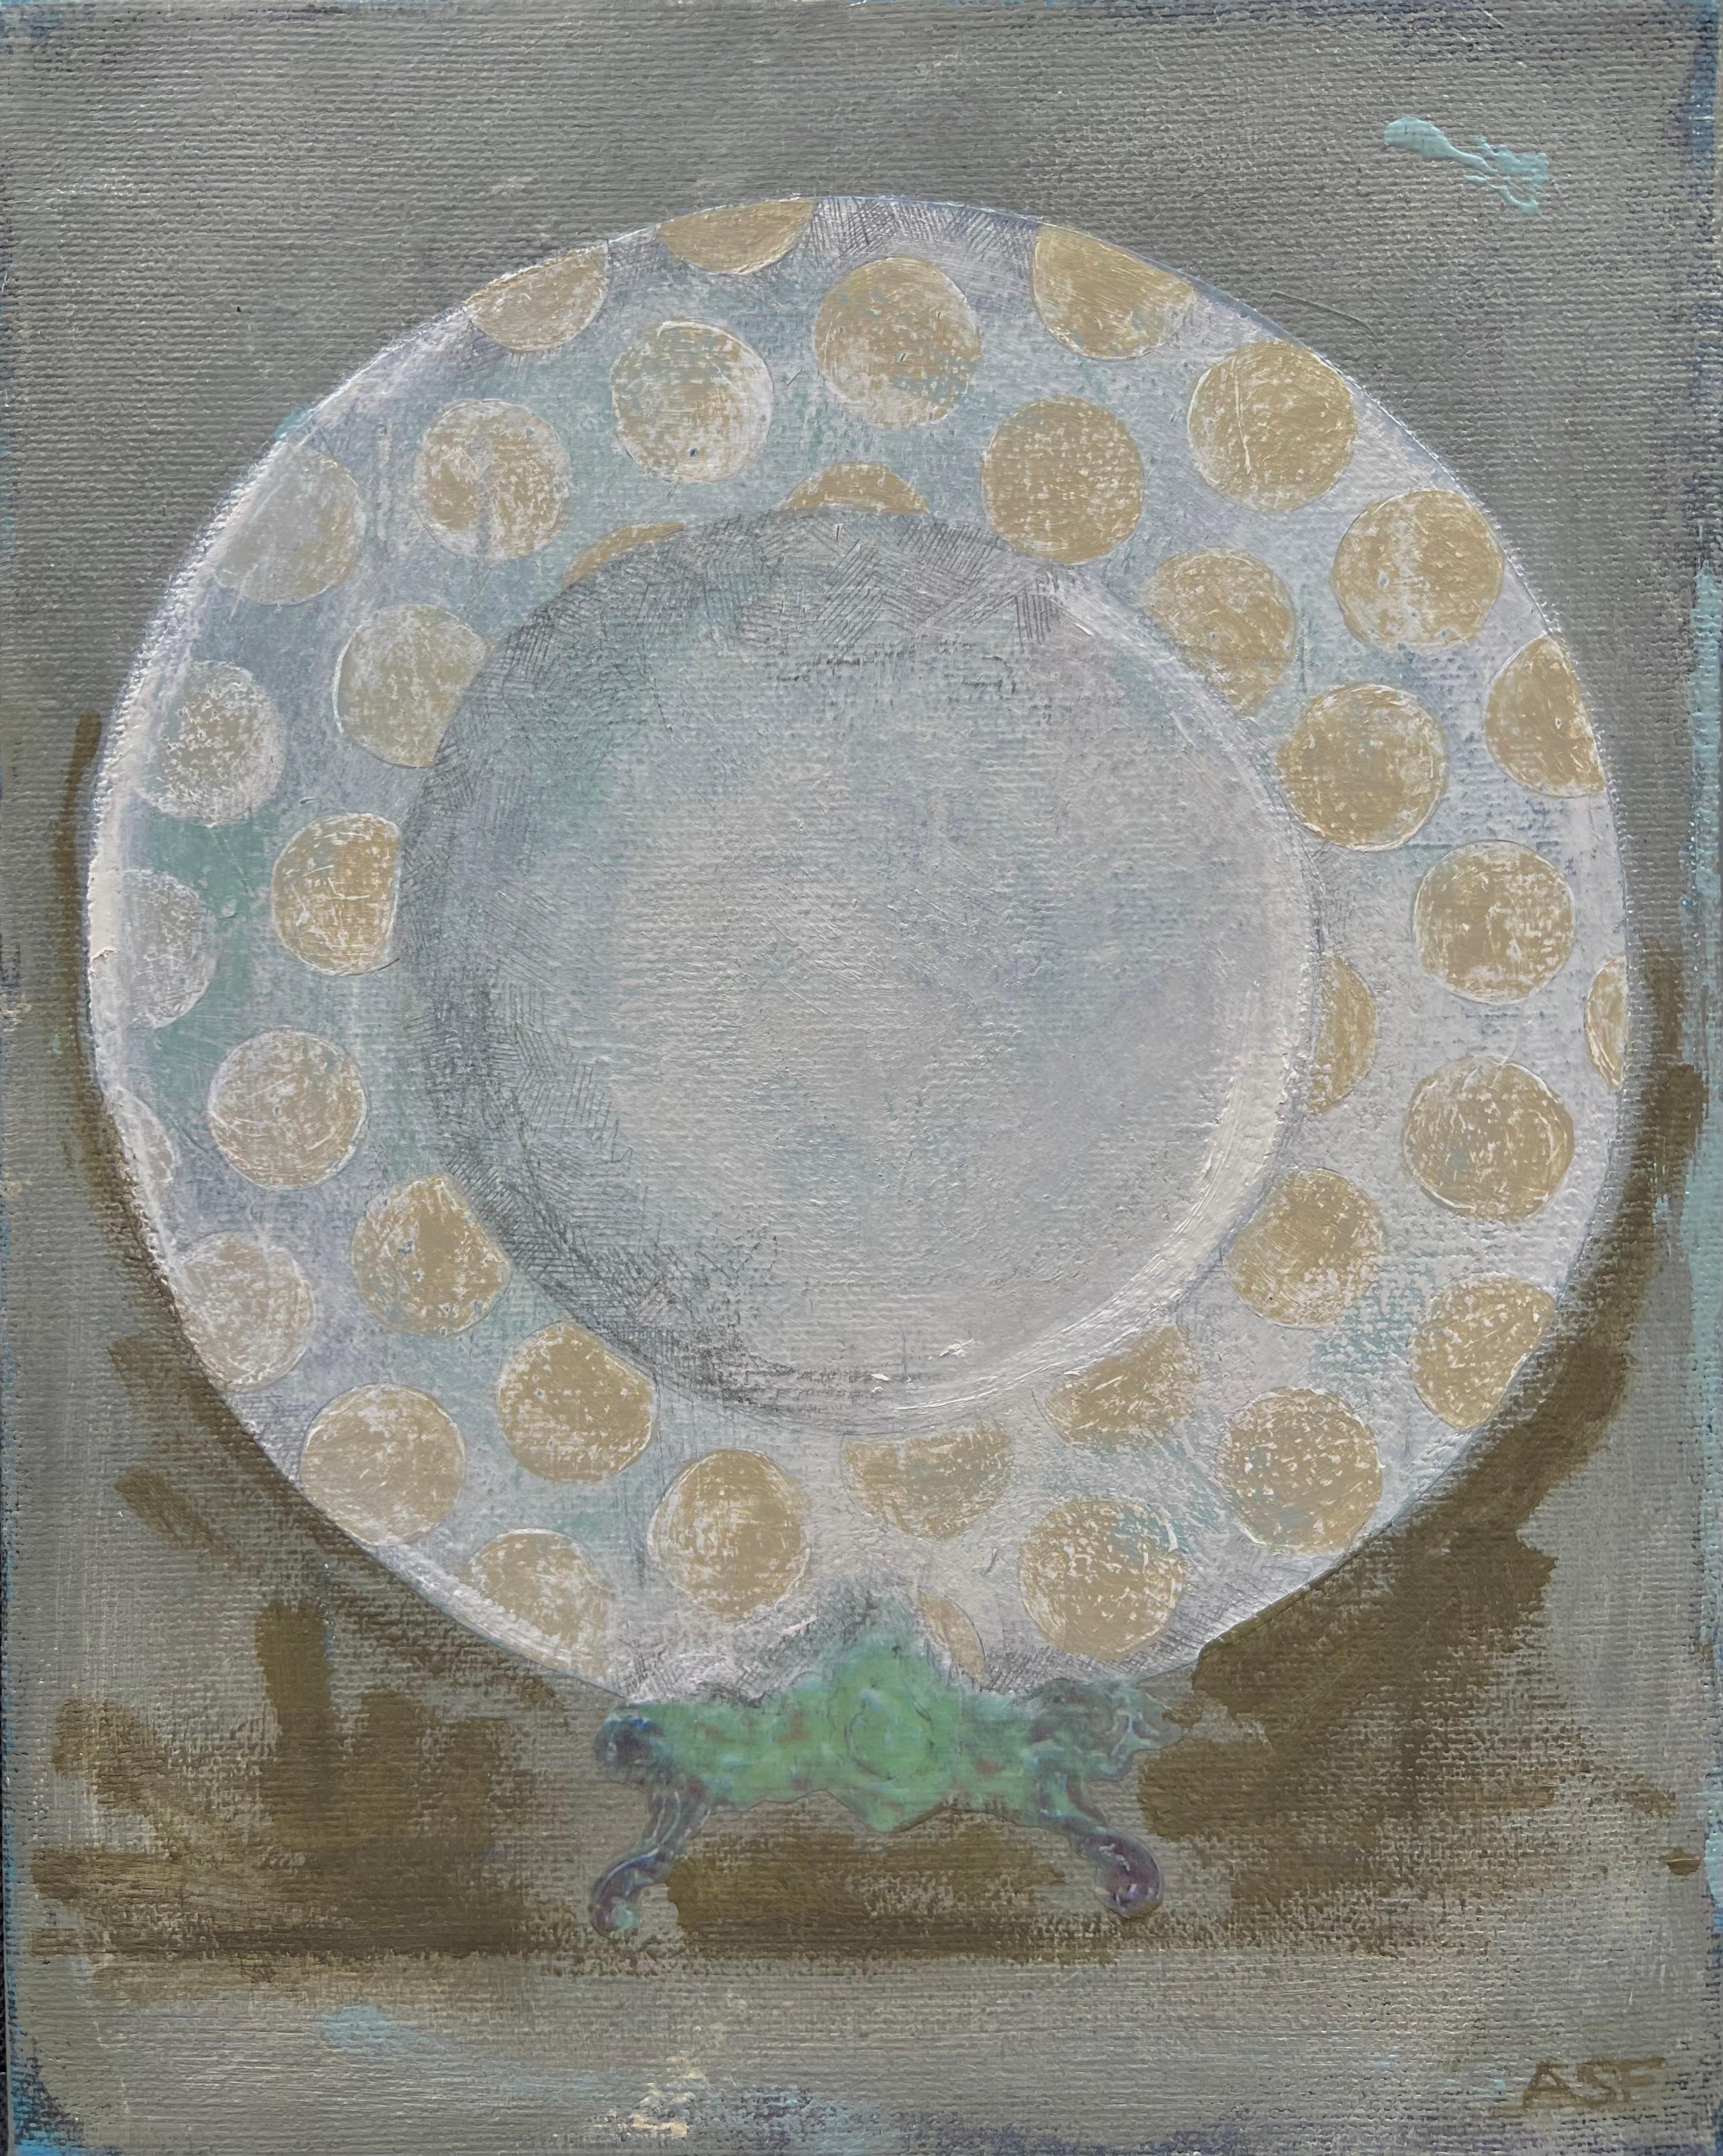 Assiette à dîner 2 (8 po. x 10 po.), peinture de nature morte sur toile, vert sourd, blanc